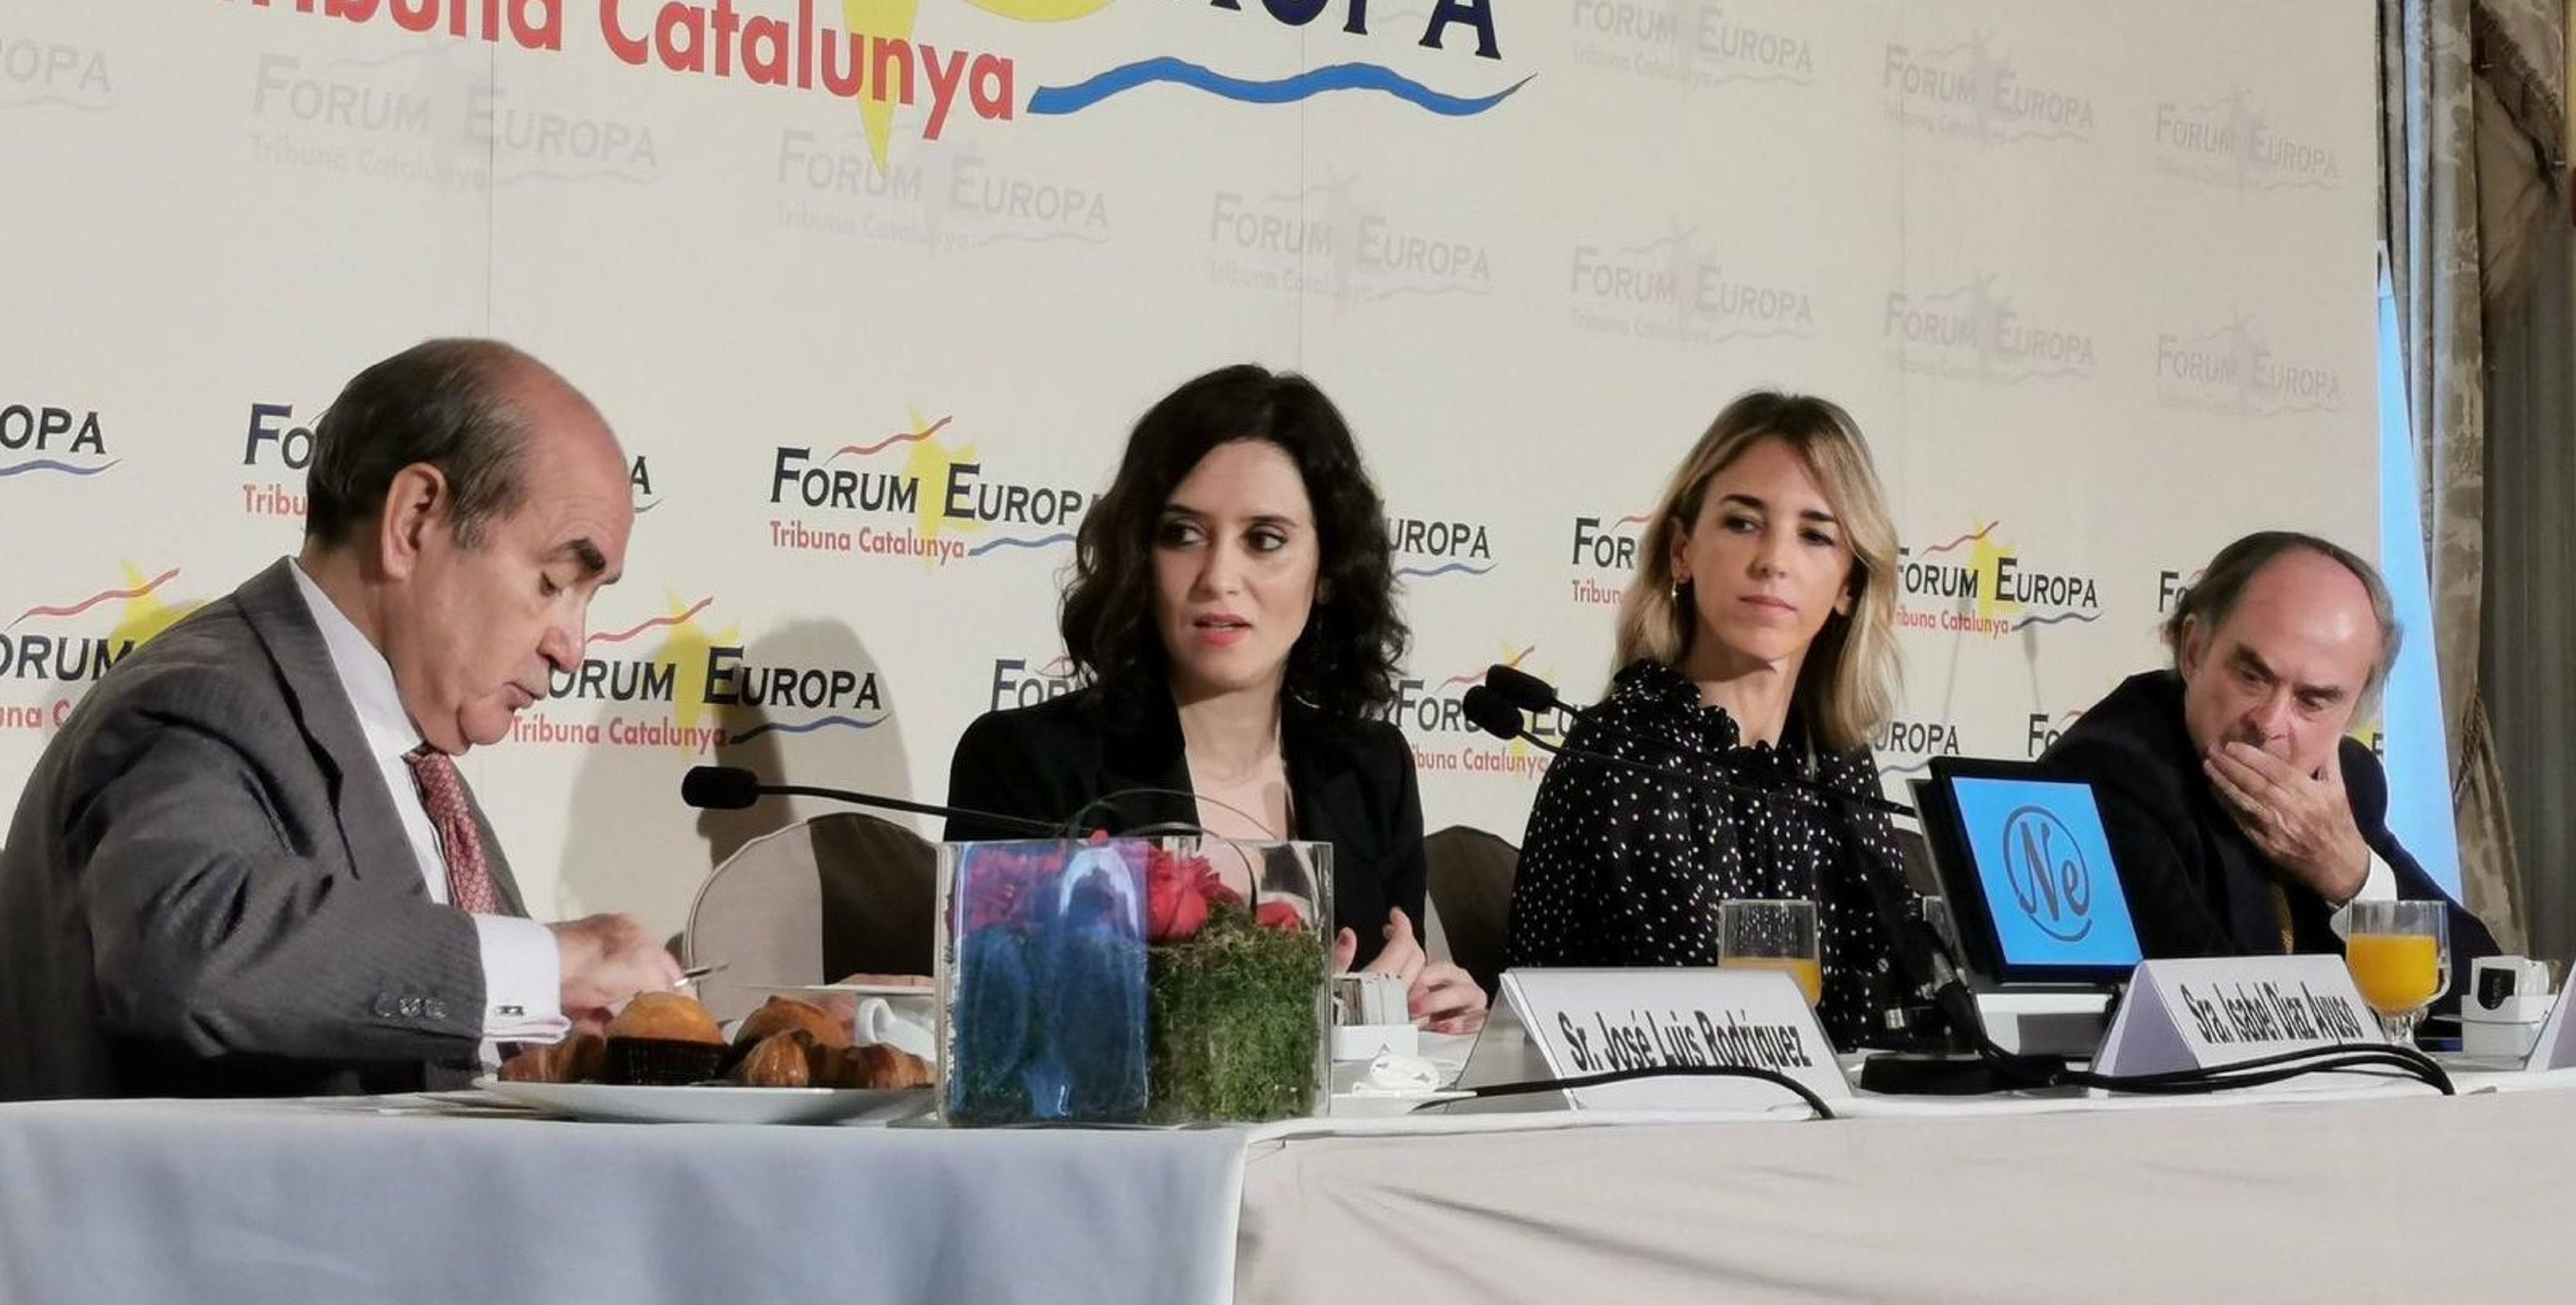 Díaz Ayuso reprocha al empresariado catalán haberse "unido al independentismo"